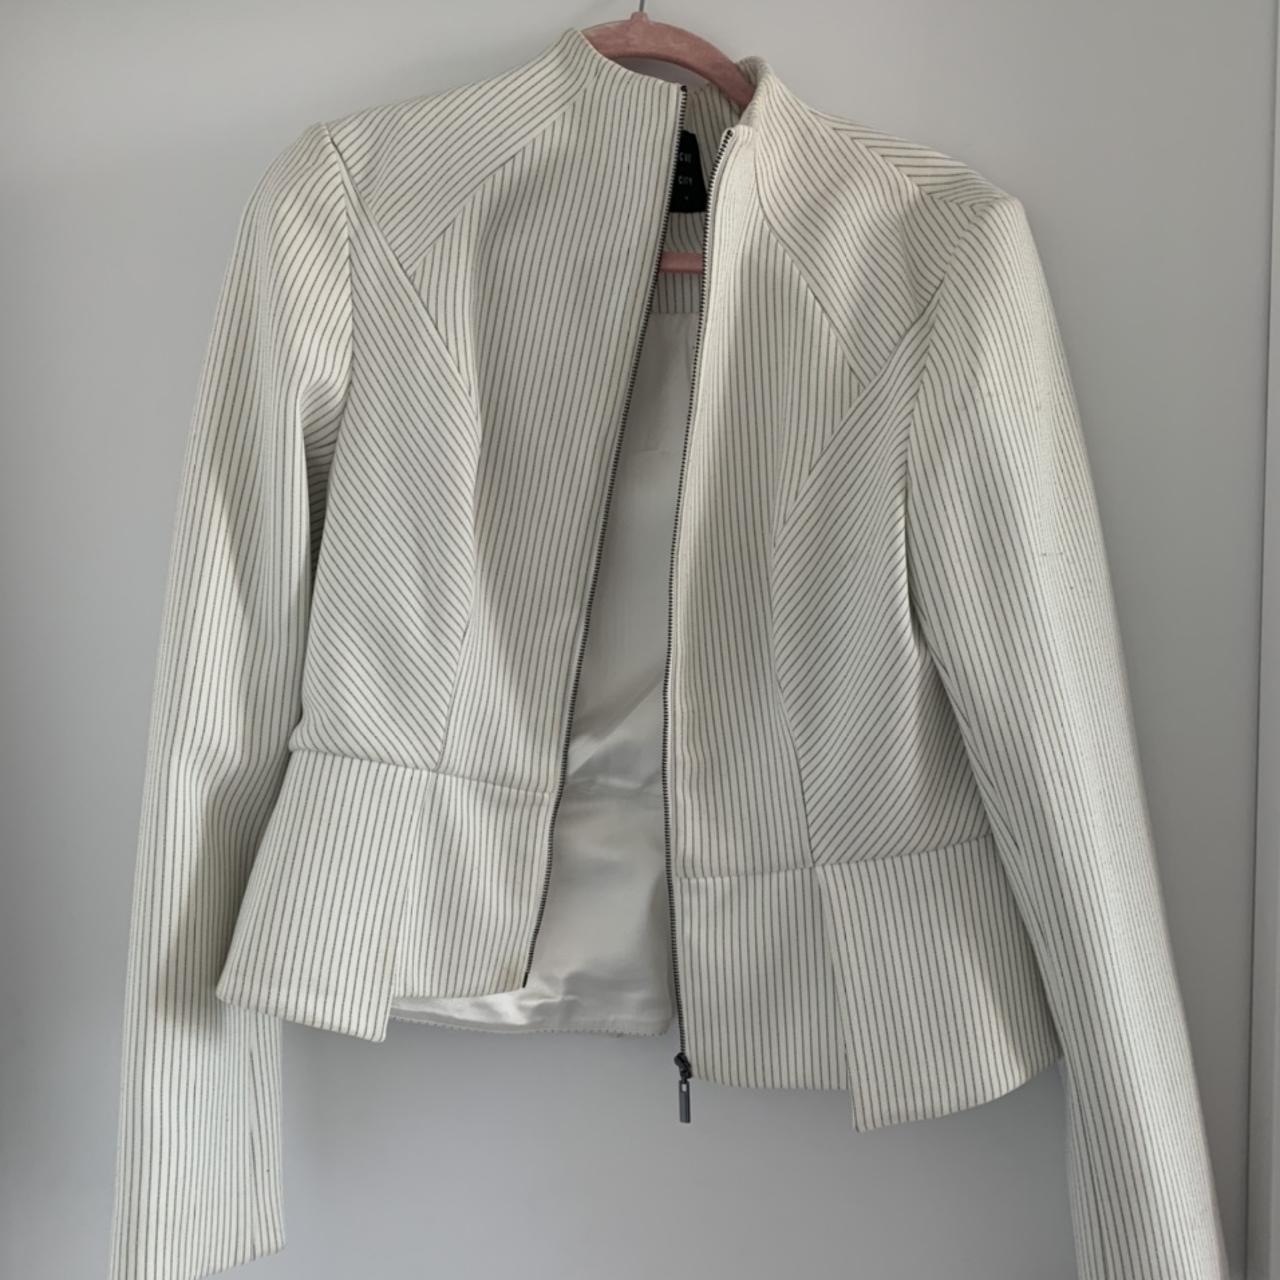 CUE City Pinstripe blazer, never been worn. Size 14. - Depop